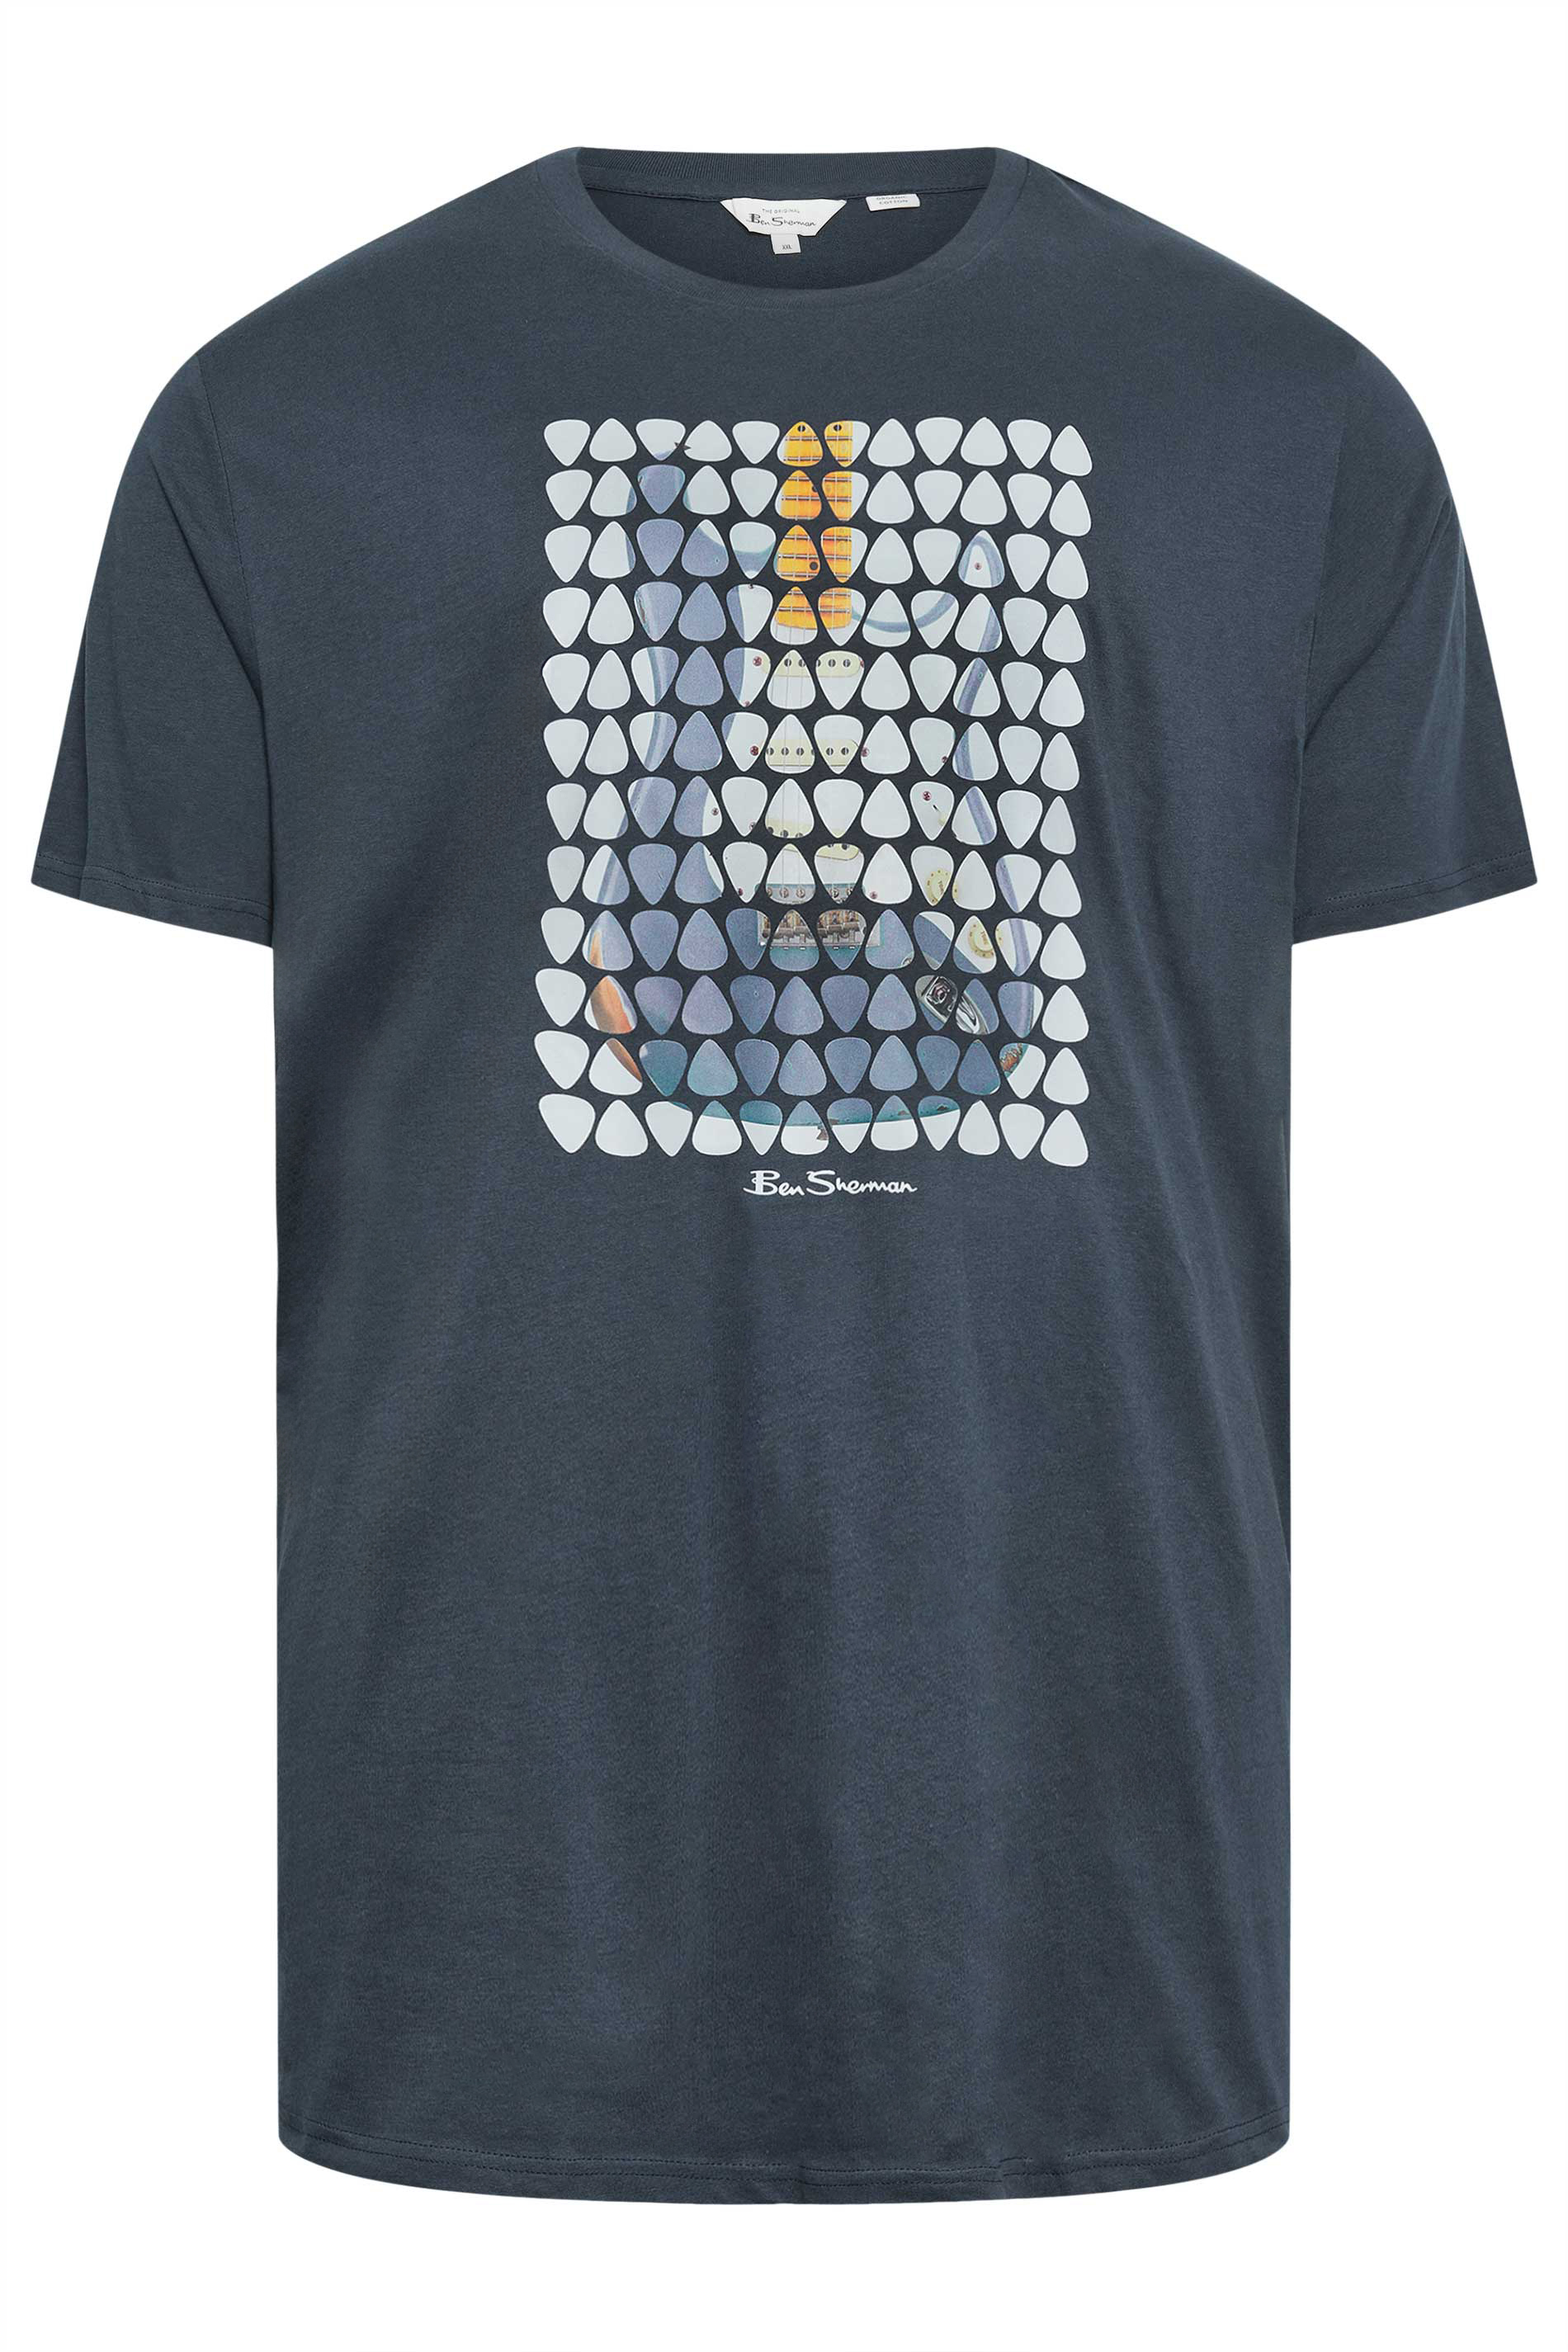 BEN SHERMAN Big & Tall Navy Blue Plectrum Print T-Shirt | BadRhino 2